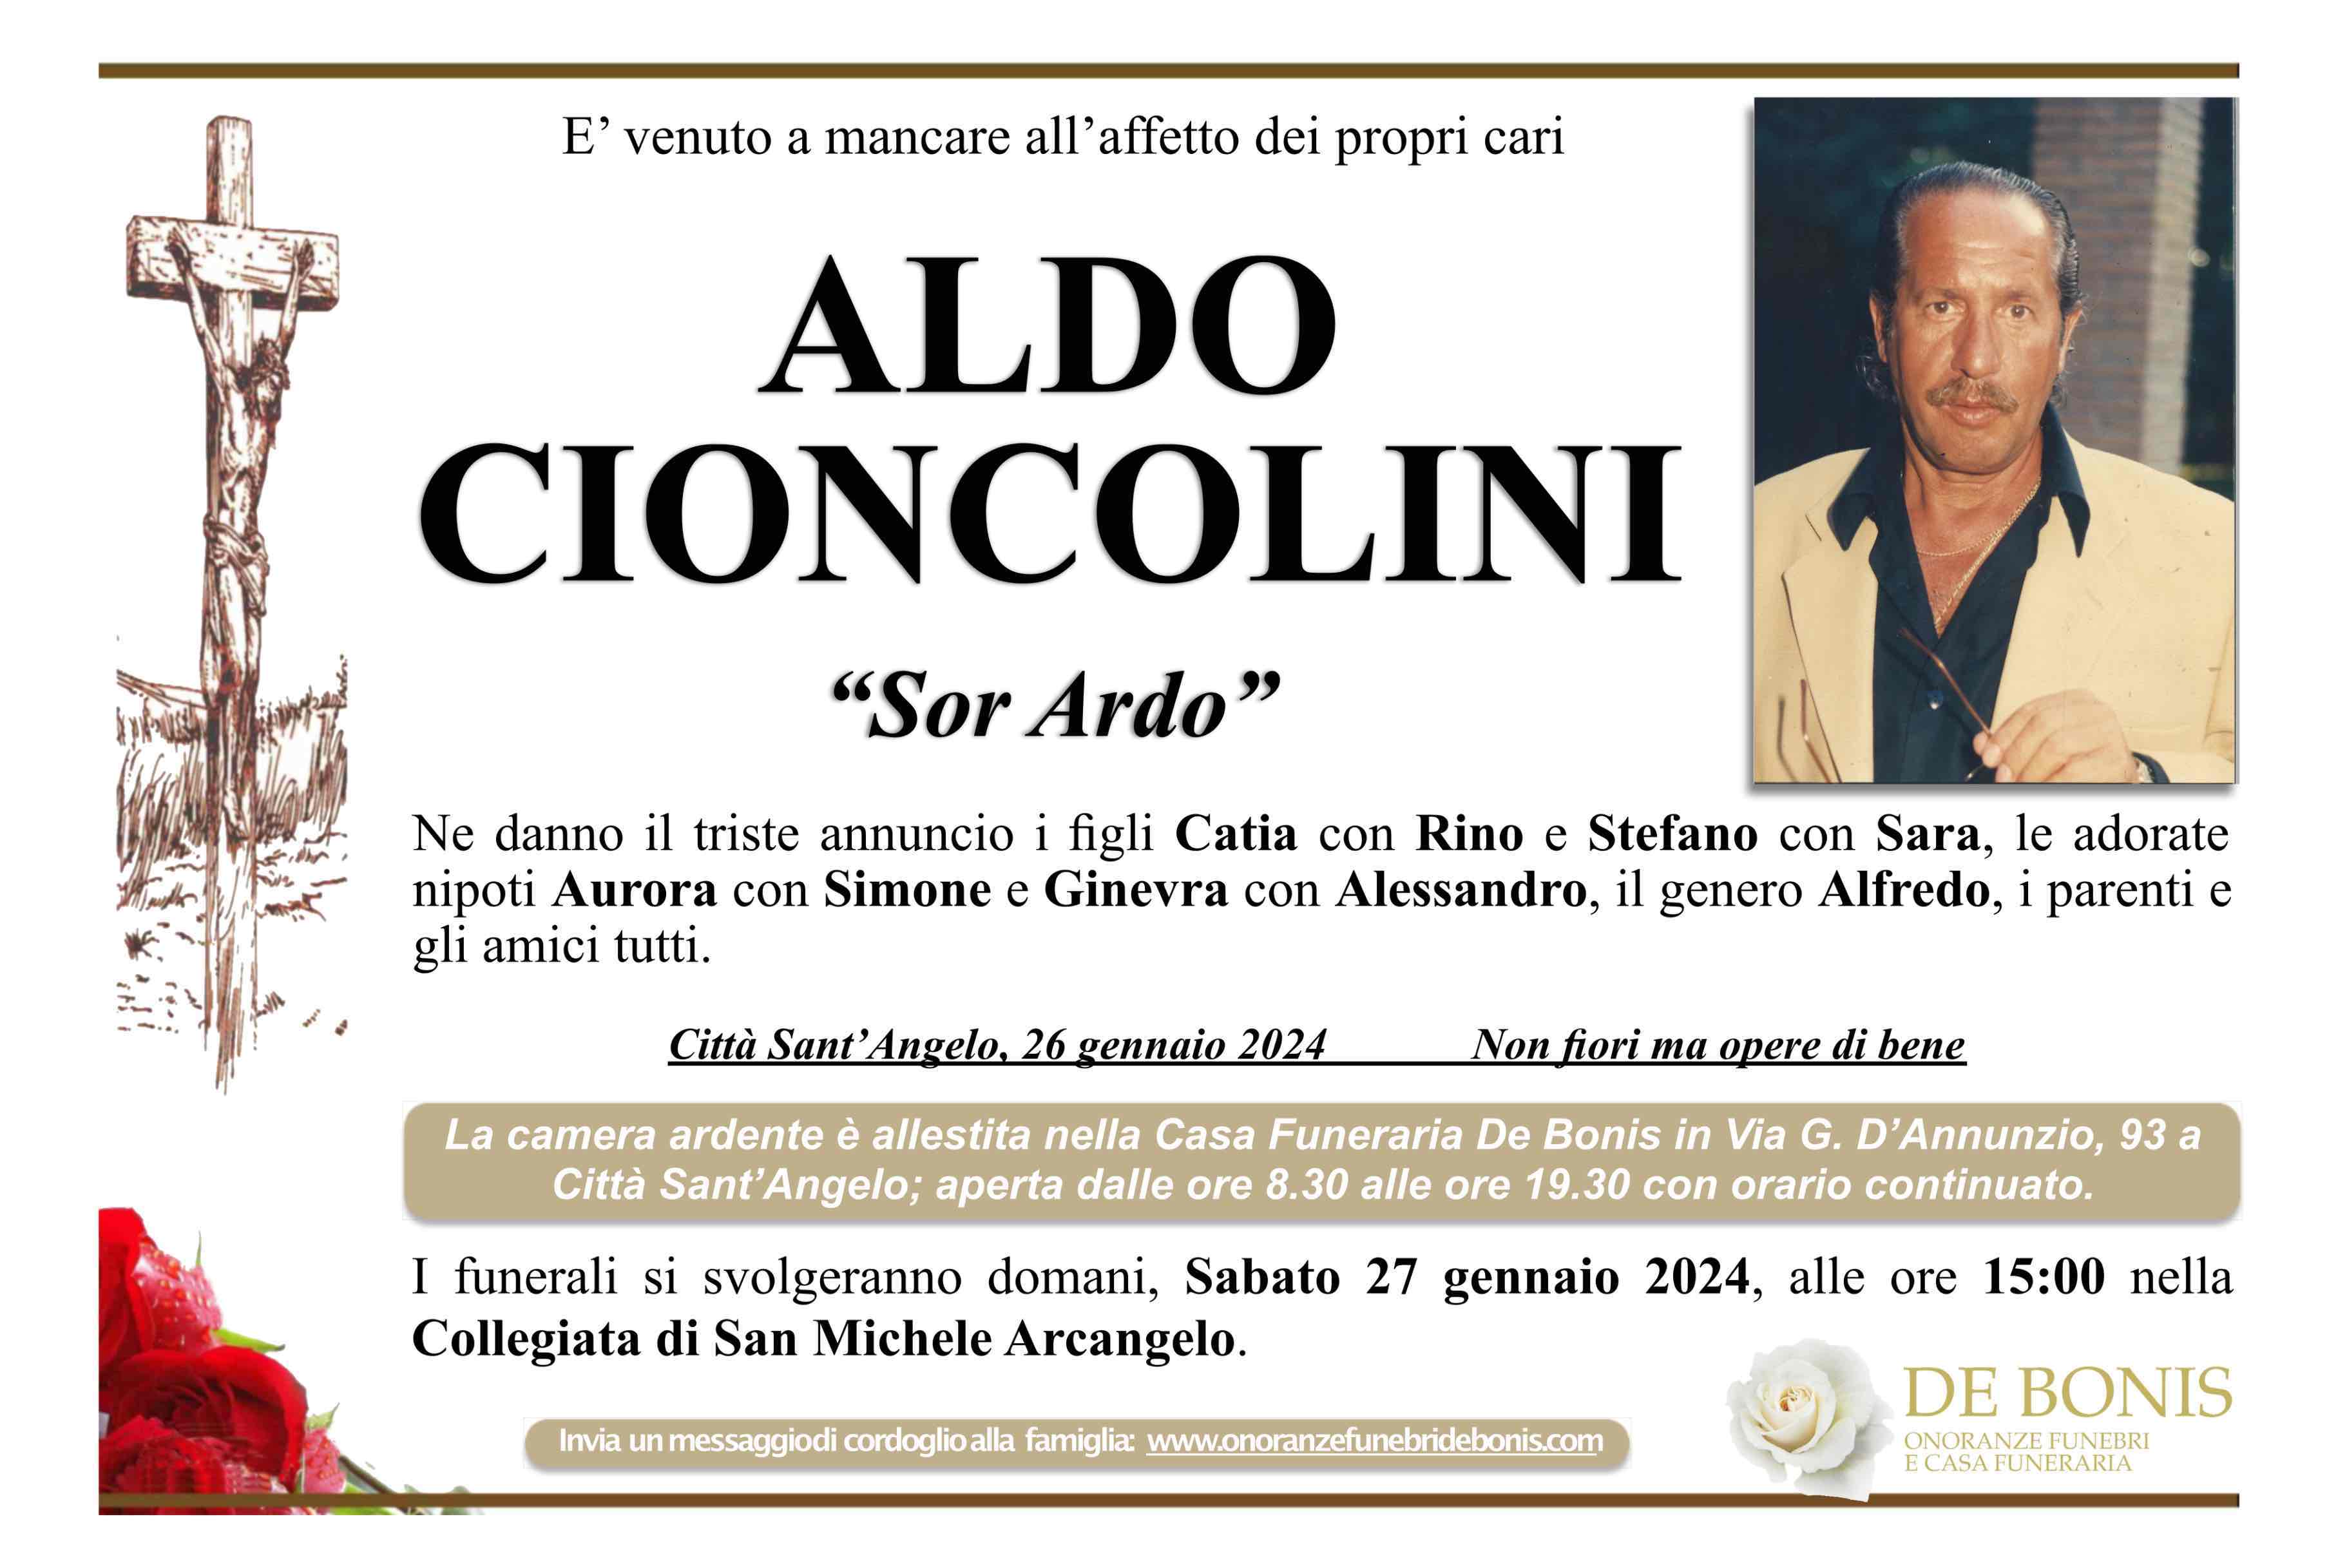 Aldo Cioncolini